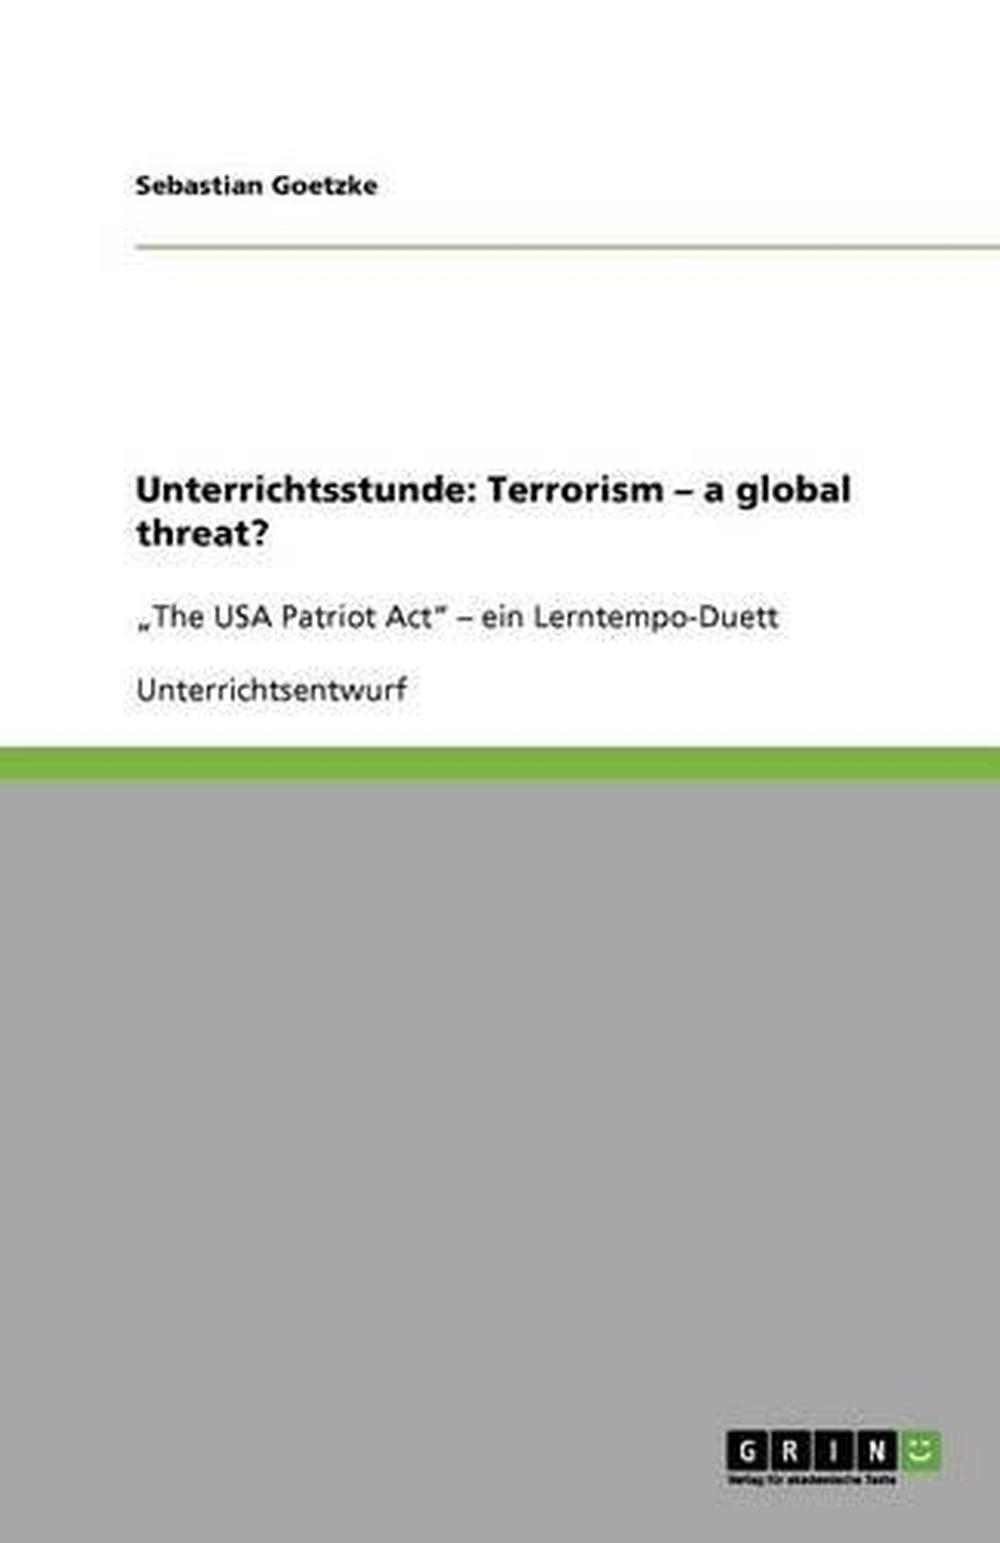 Unterrichtsstunde: Terrorism - A Global Threat?: "The USA Patriot Act" - ein Ler - Photo 1/1